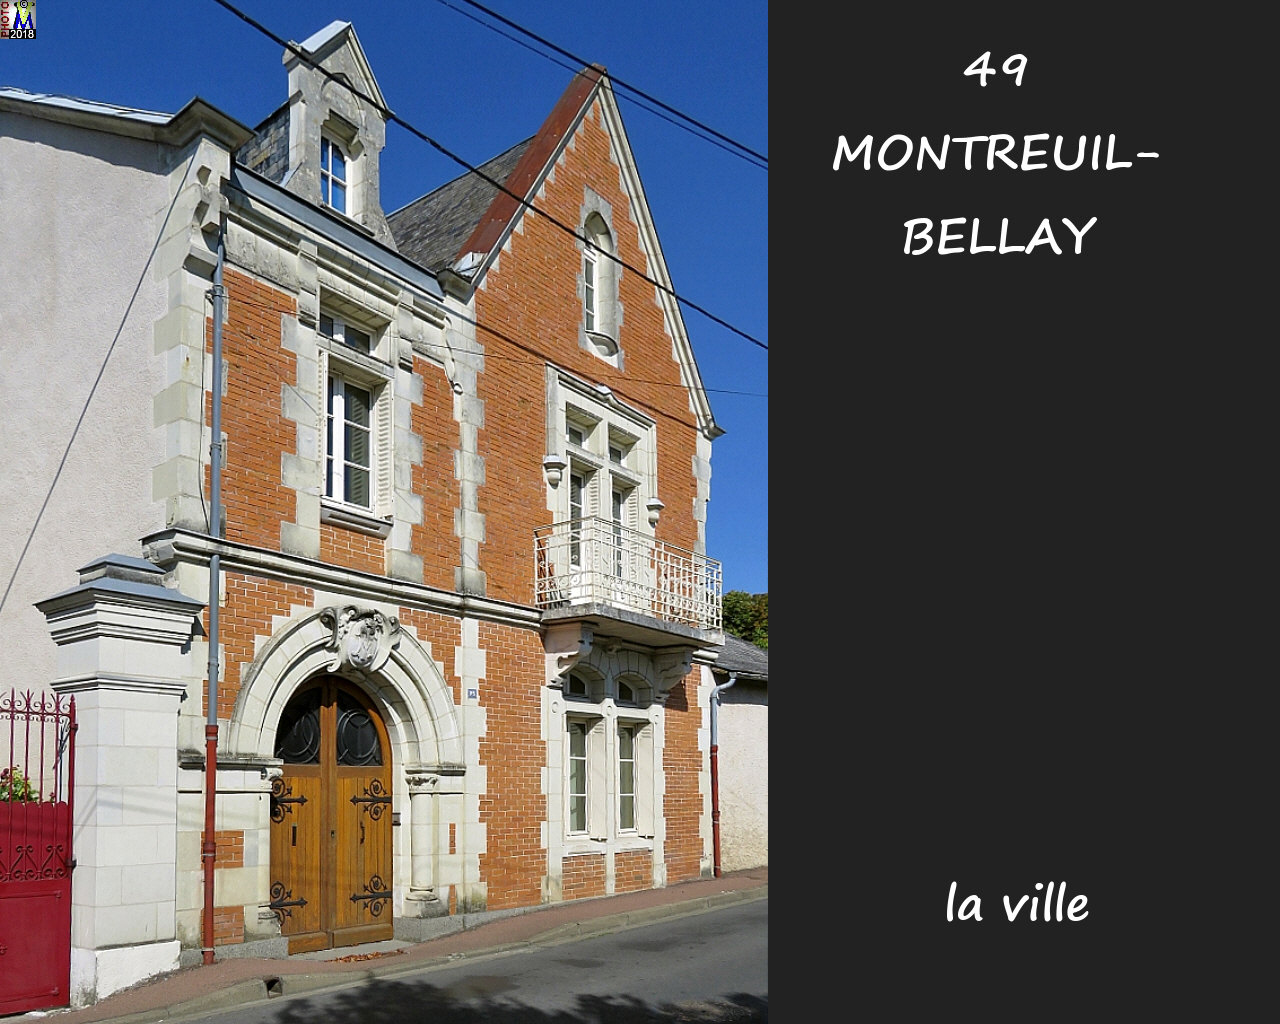 49MONTREUIL-BELLAY_ville_1082.jpg